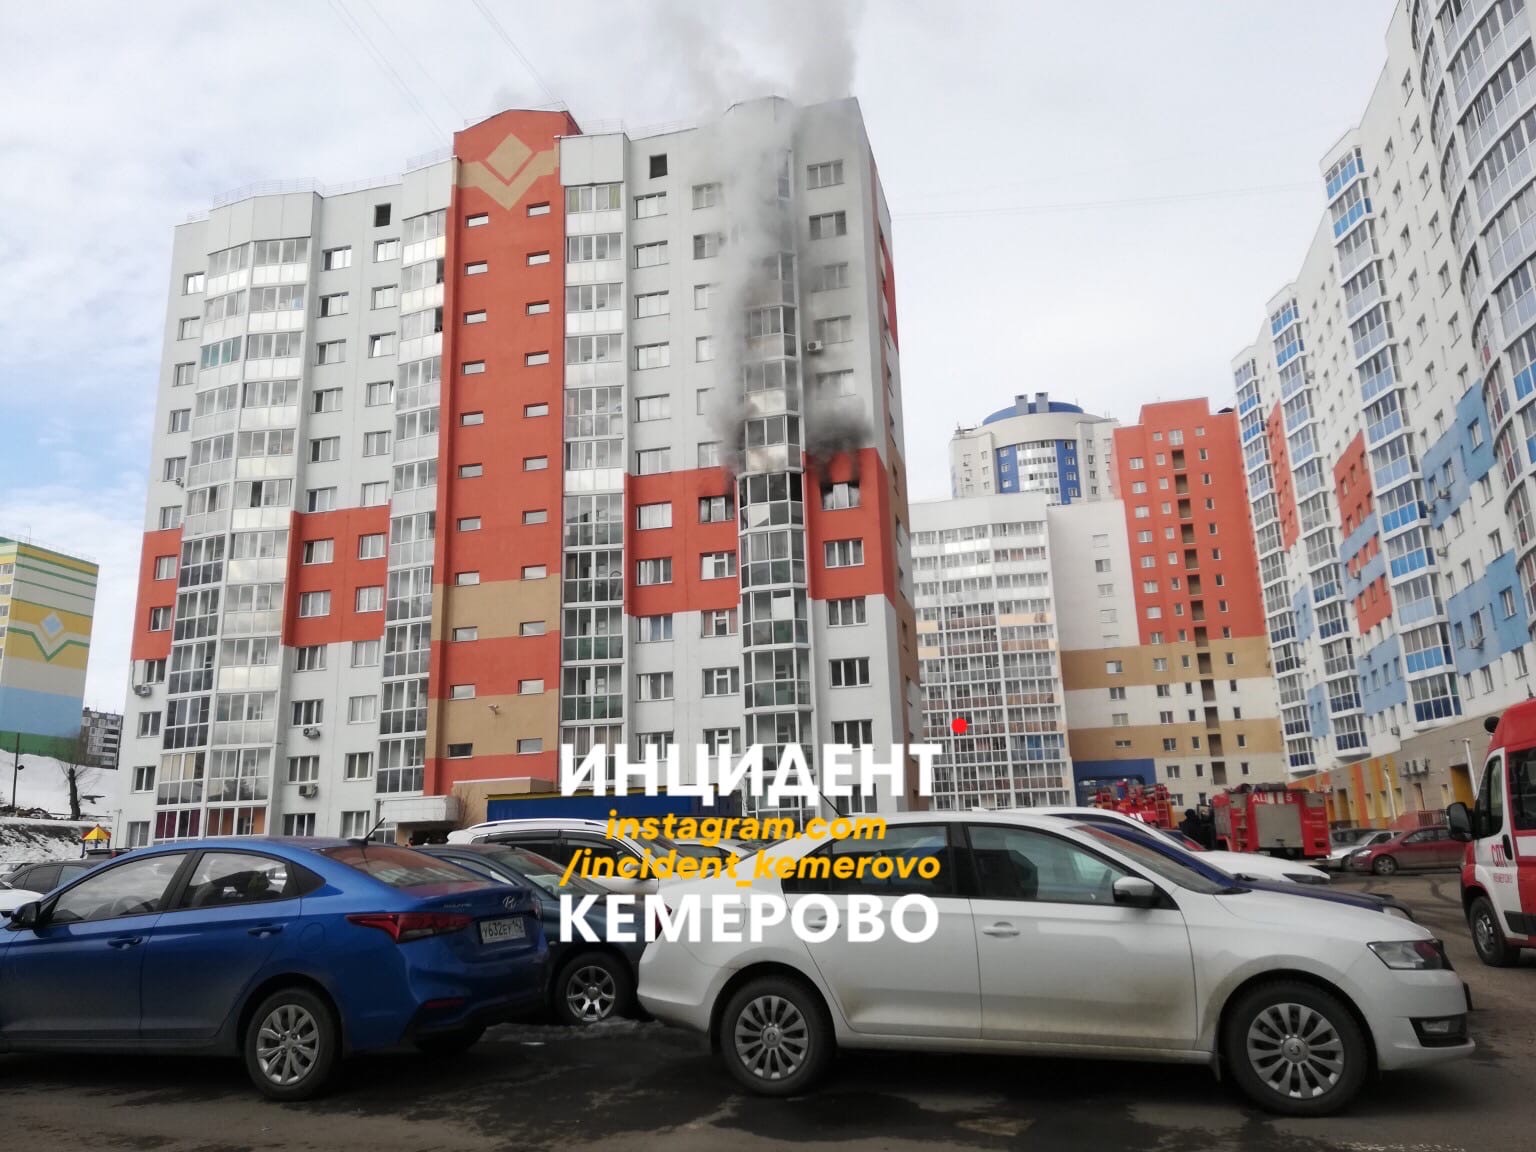 В Кемерове из горящей многоэтажки пожарные спасли 4 человек